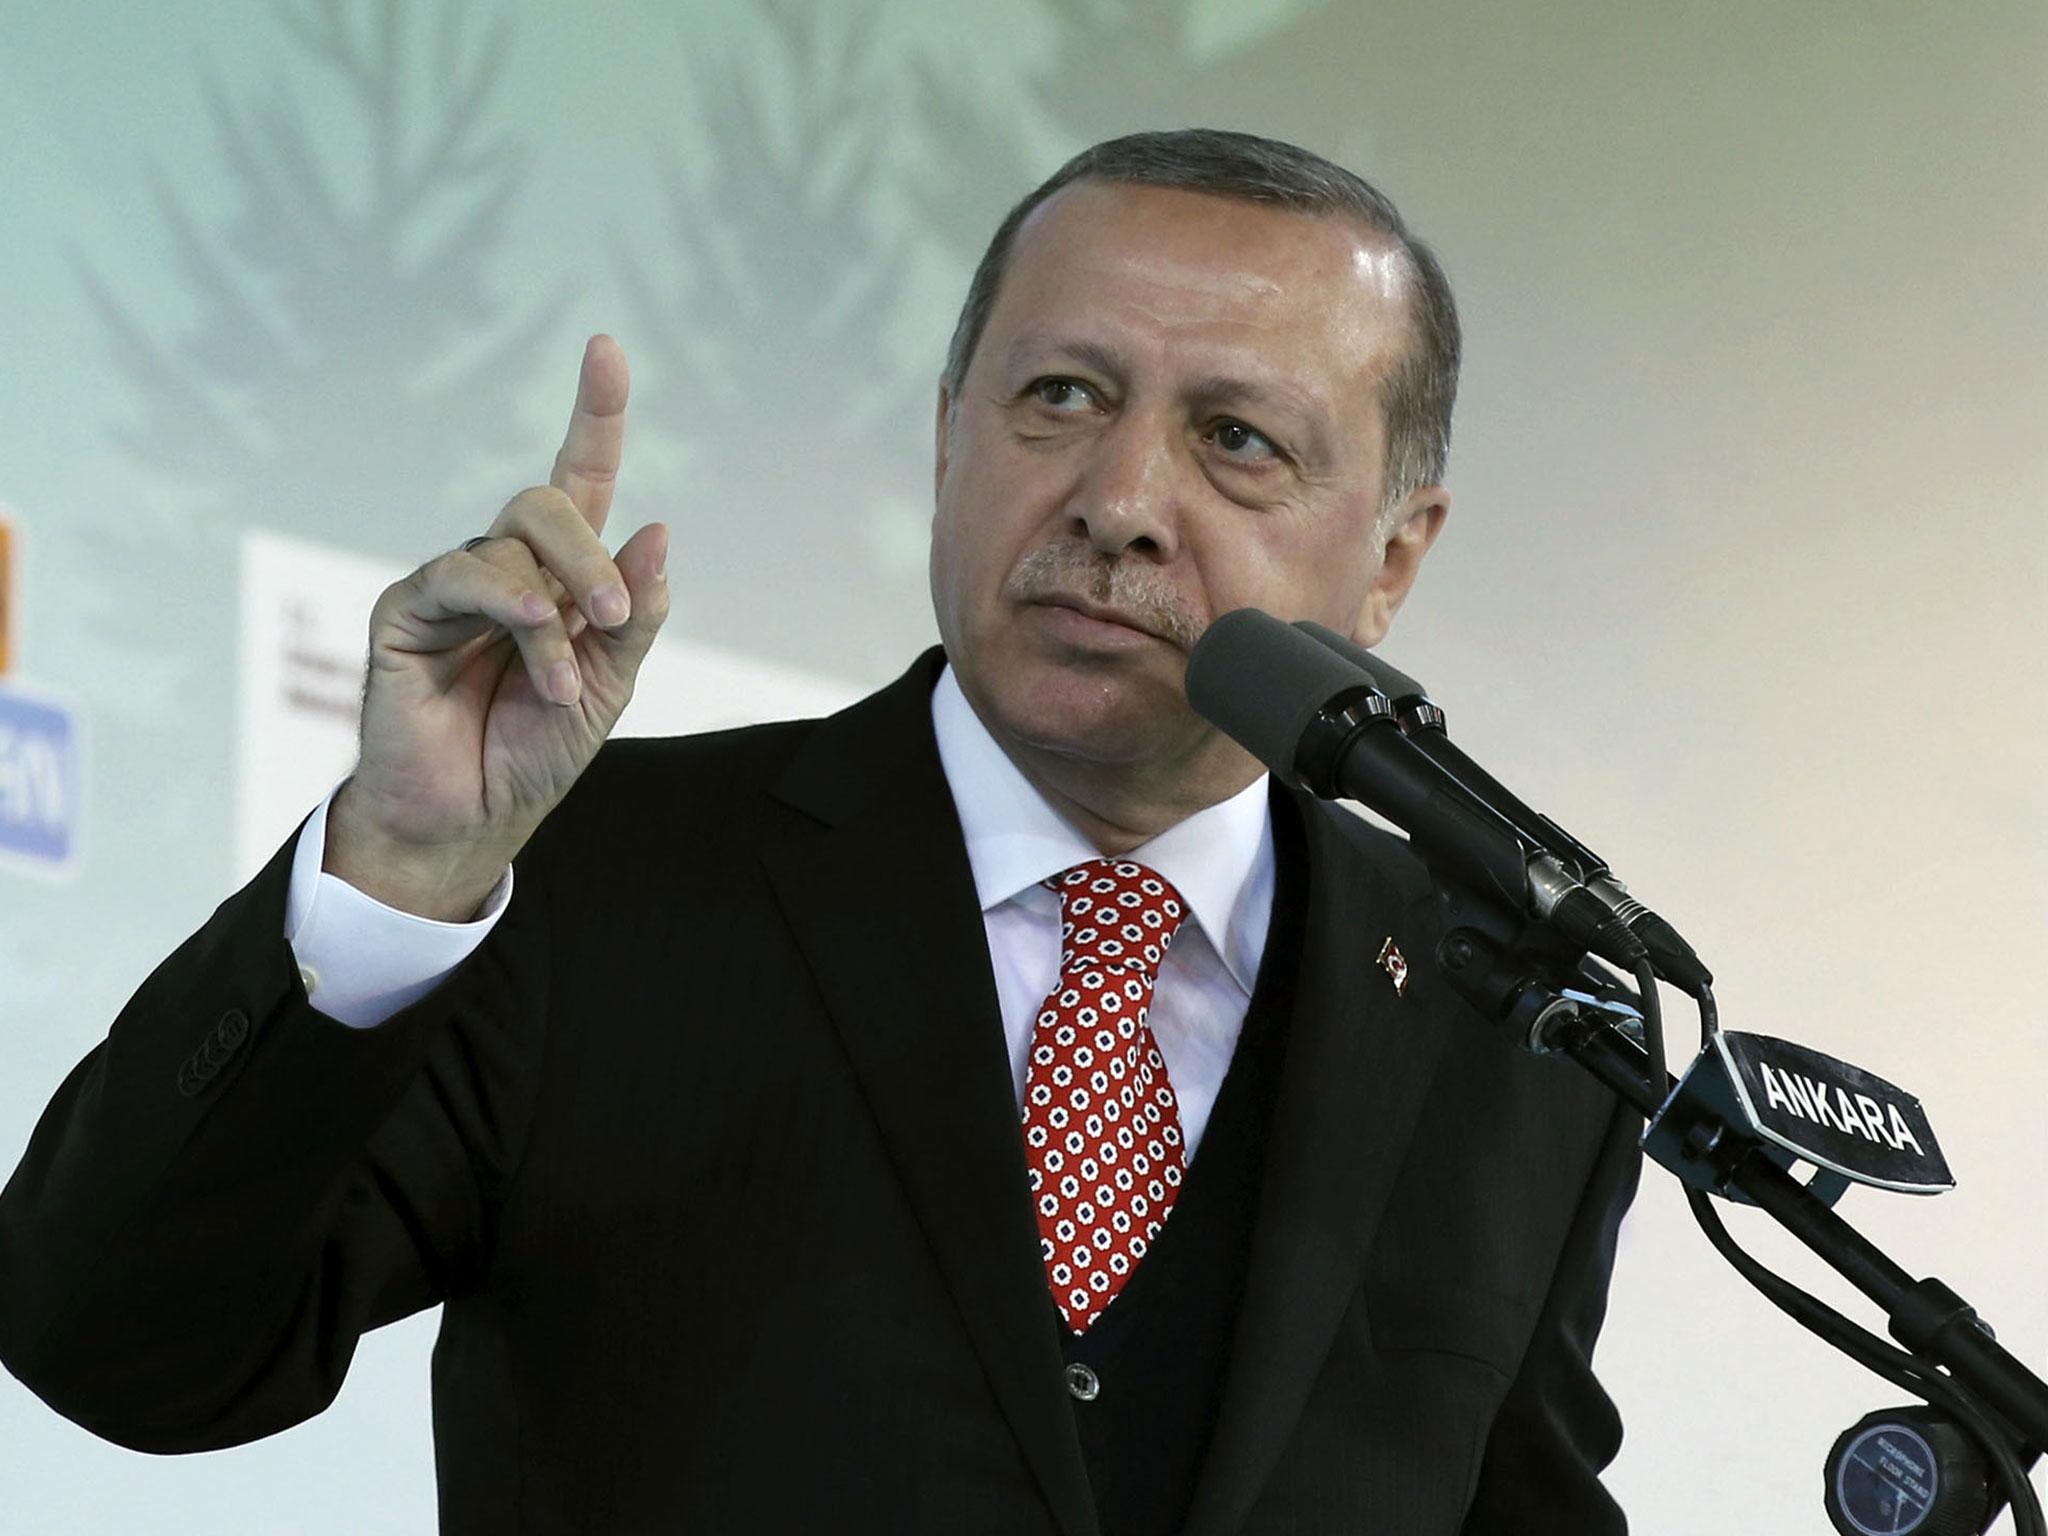   أردوغان يؤجج نزاعا إعلاميا مع ألمانيا